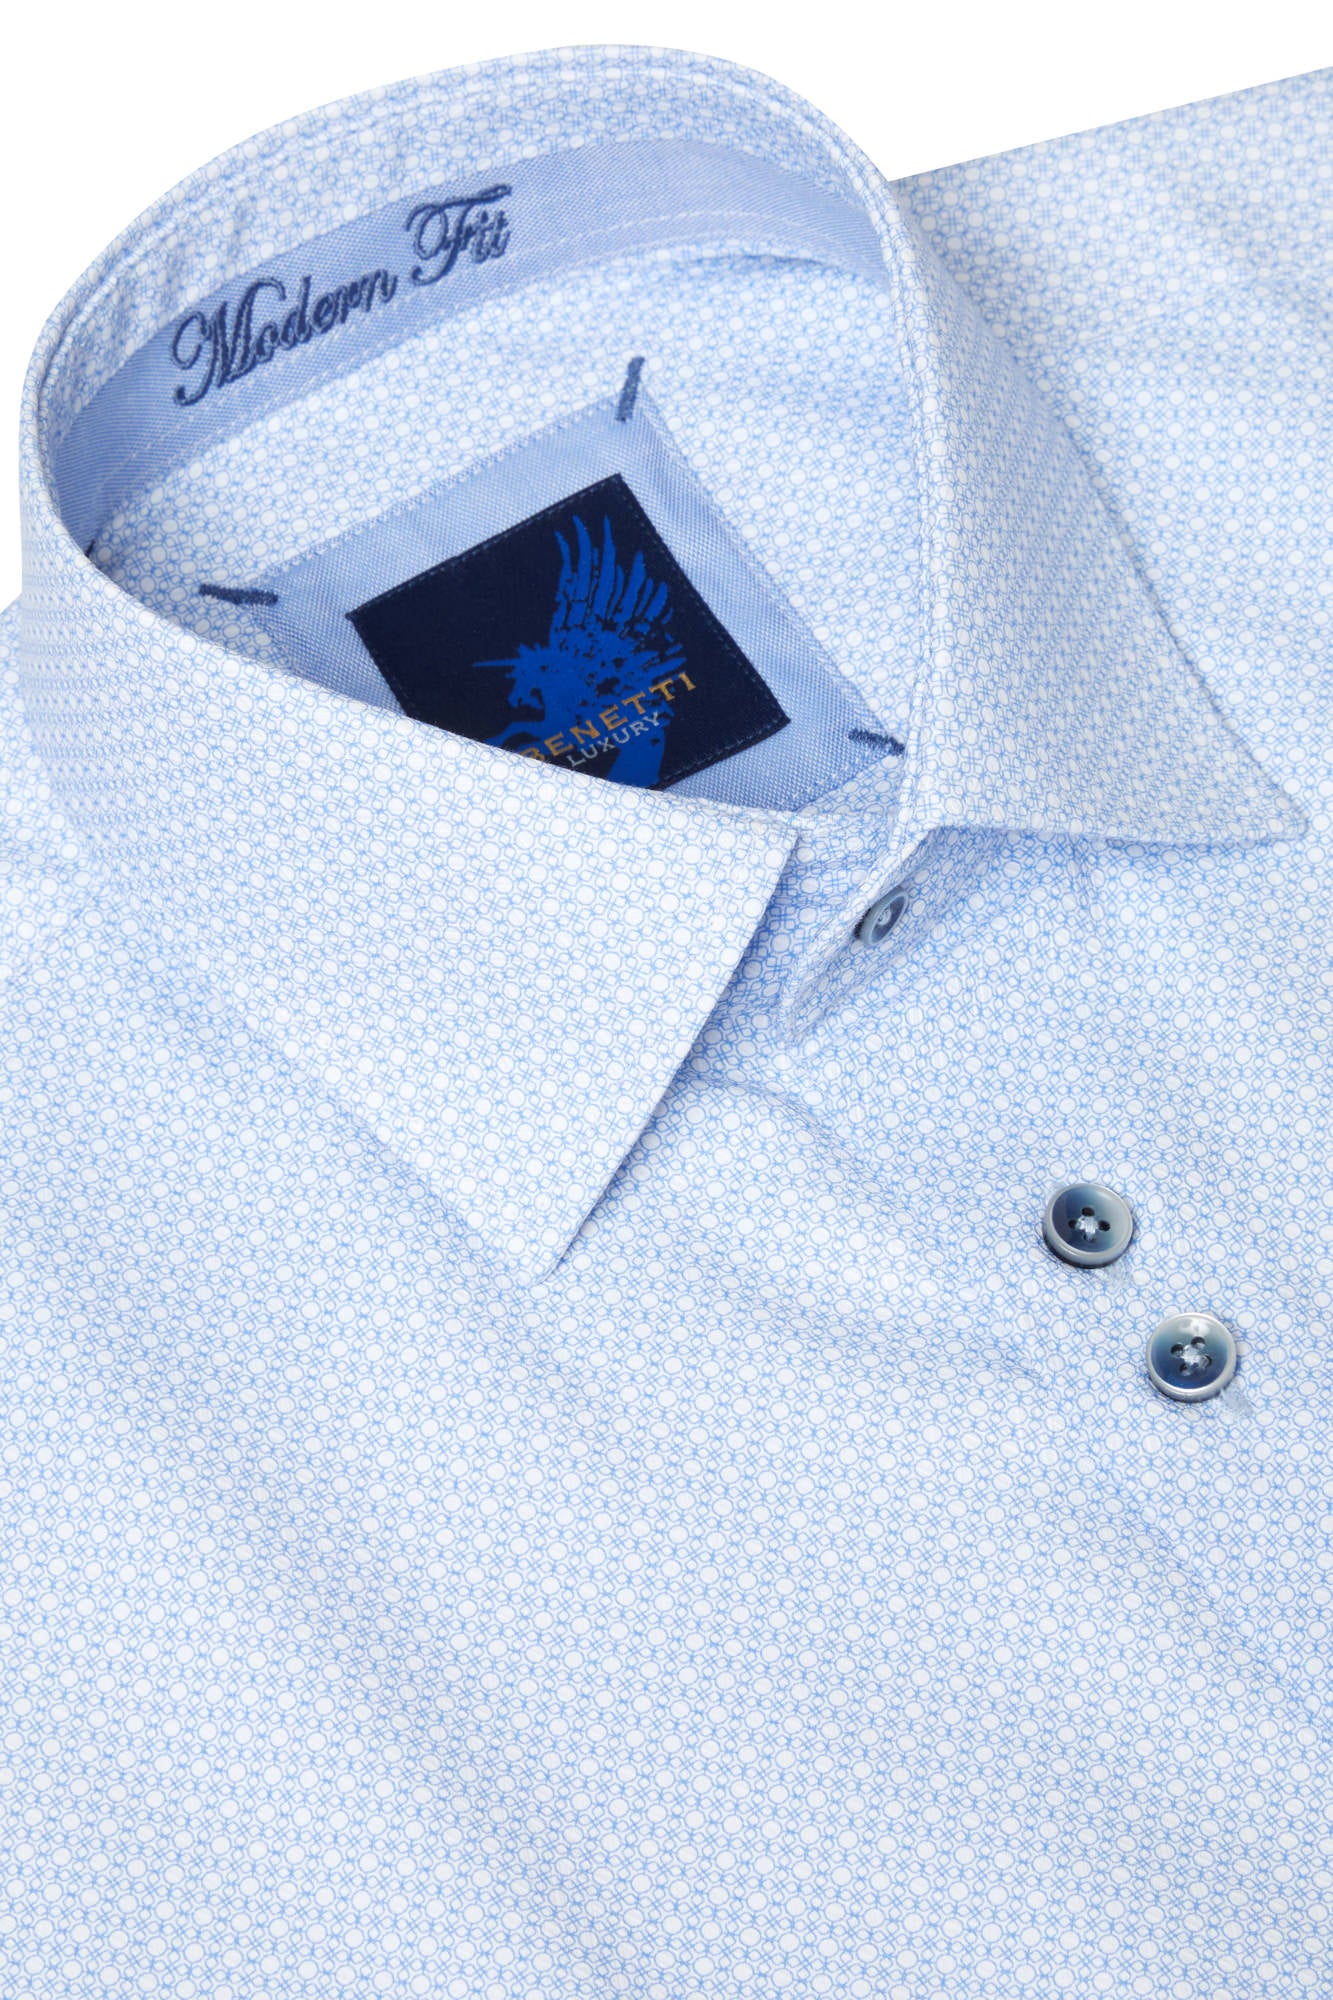 Ural Blue Long Sleeve Shirt - Collar detail